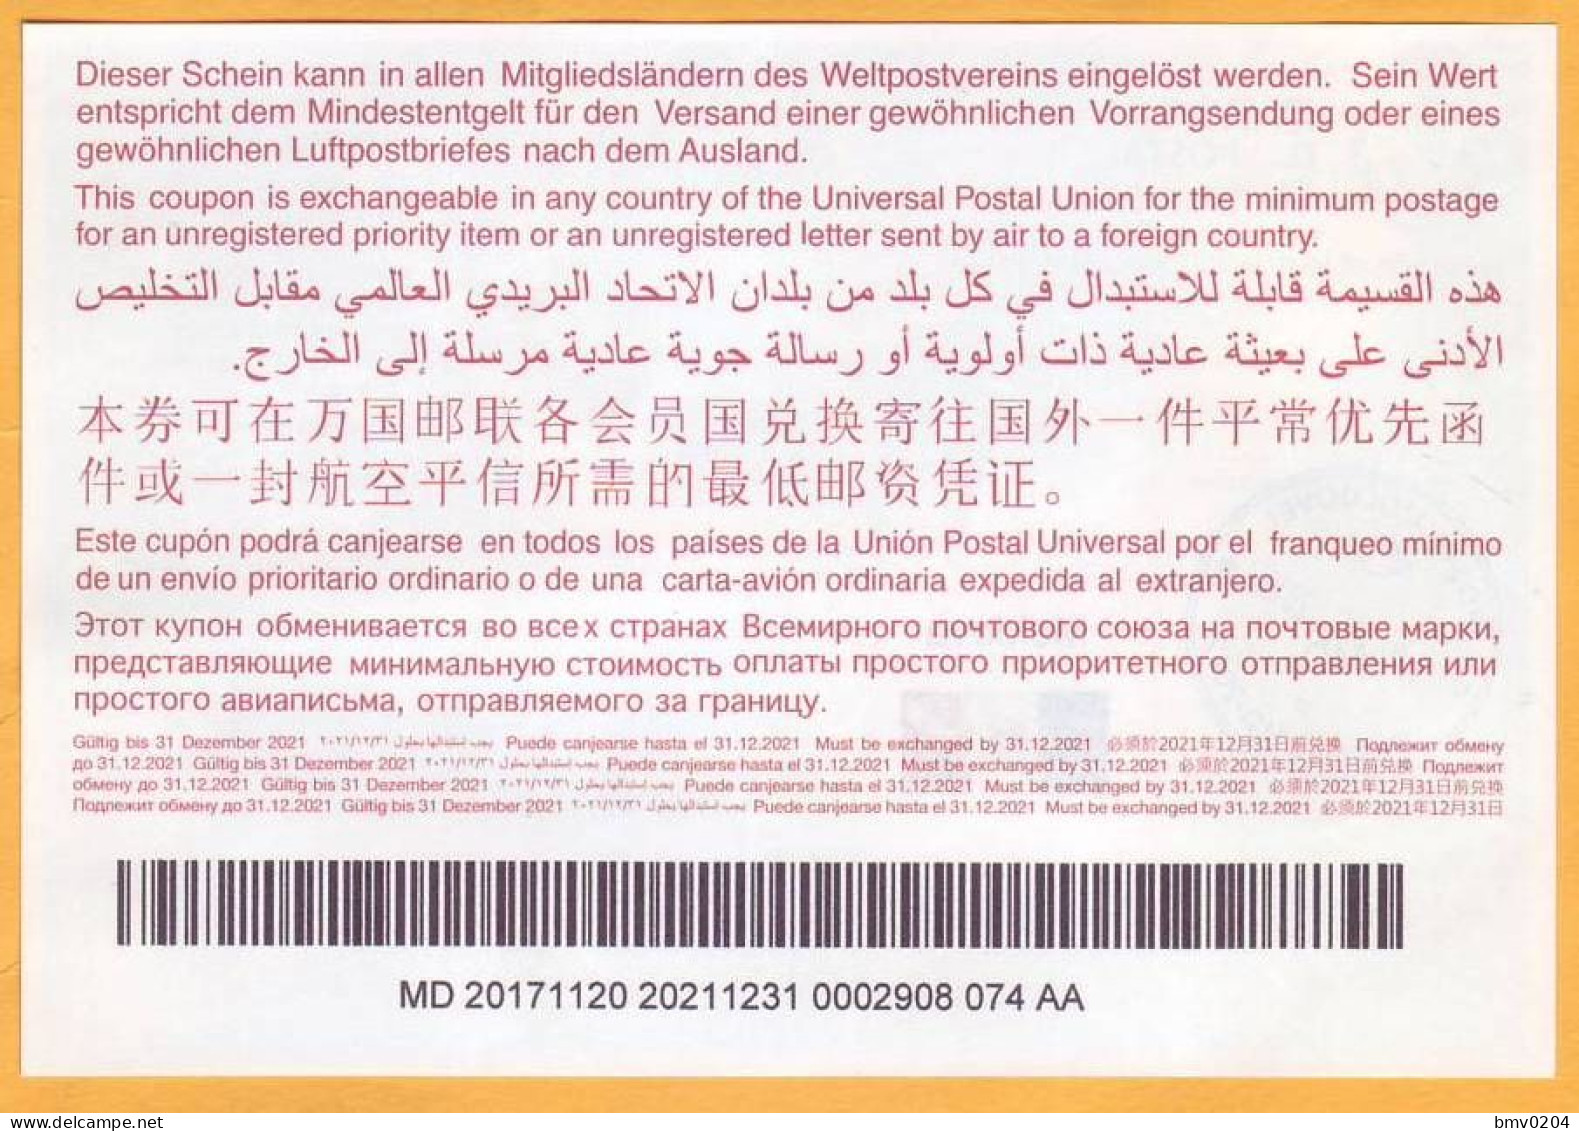 2017  Moldova Moldavie Moldau  Universal Postal Union. International Return Coupon. 0002908 074 AA - UPU (Universal Postal Union)